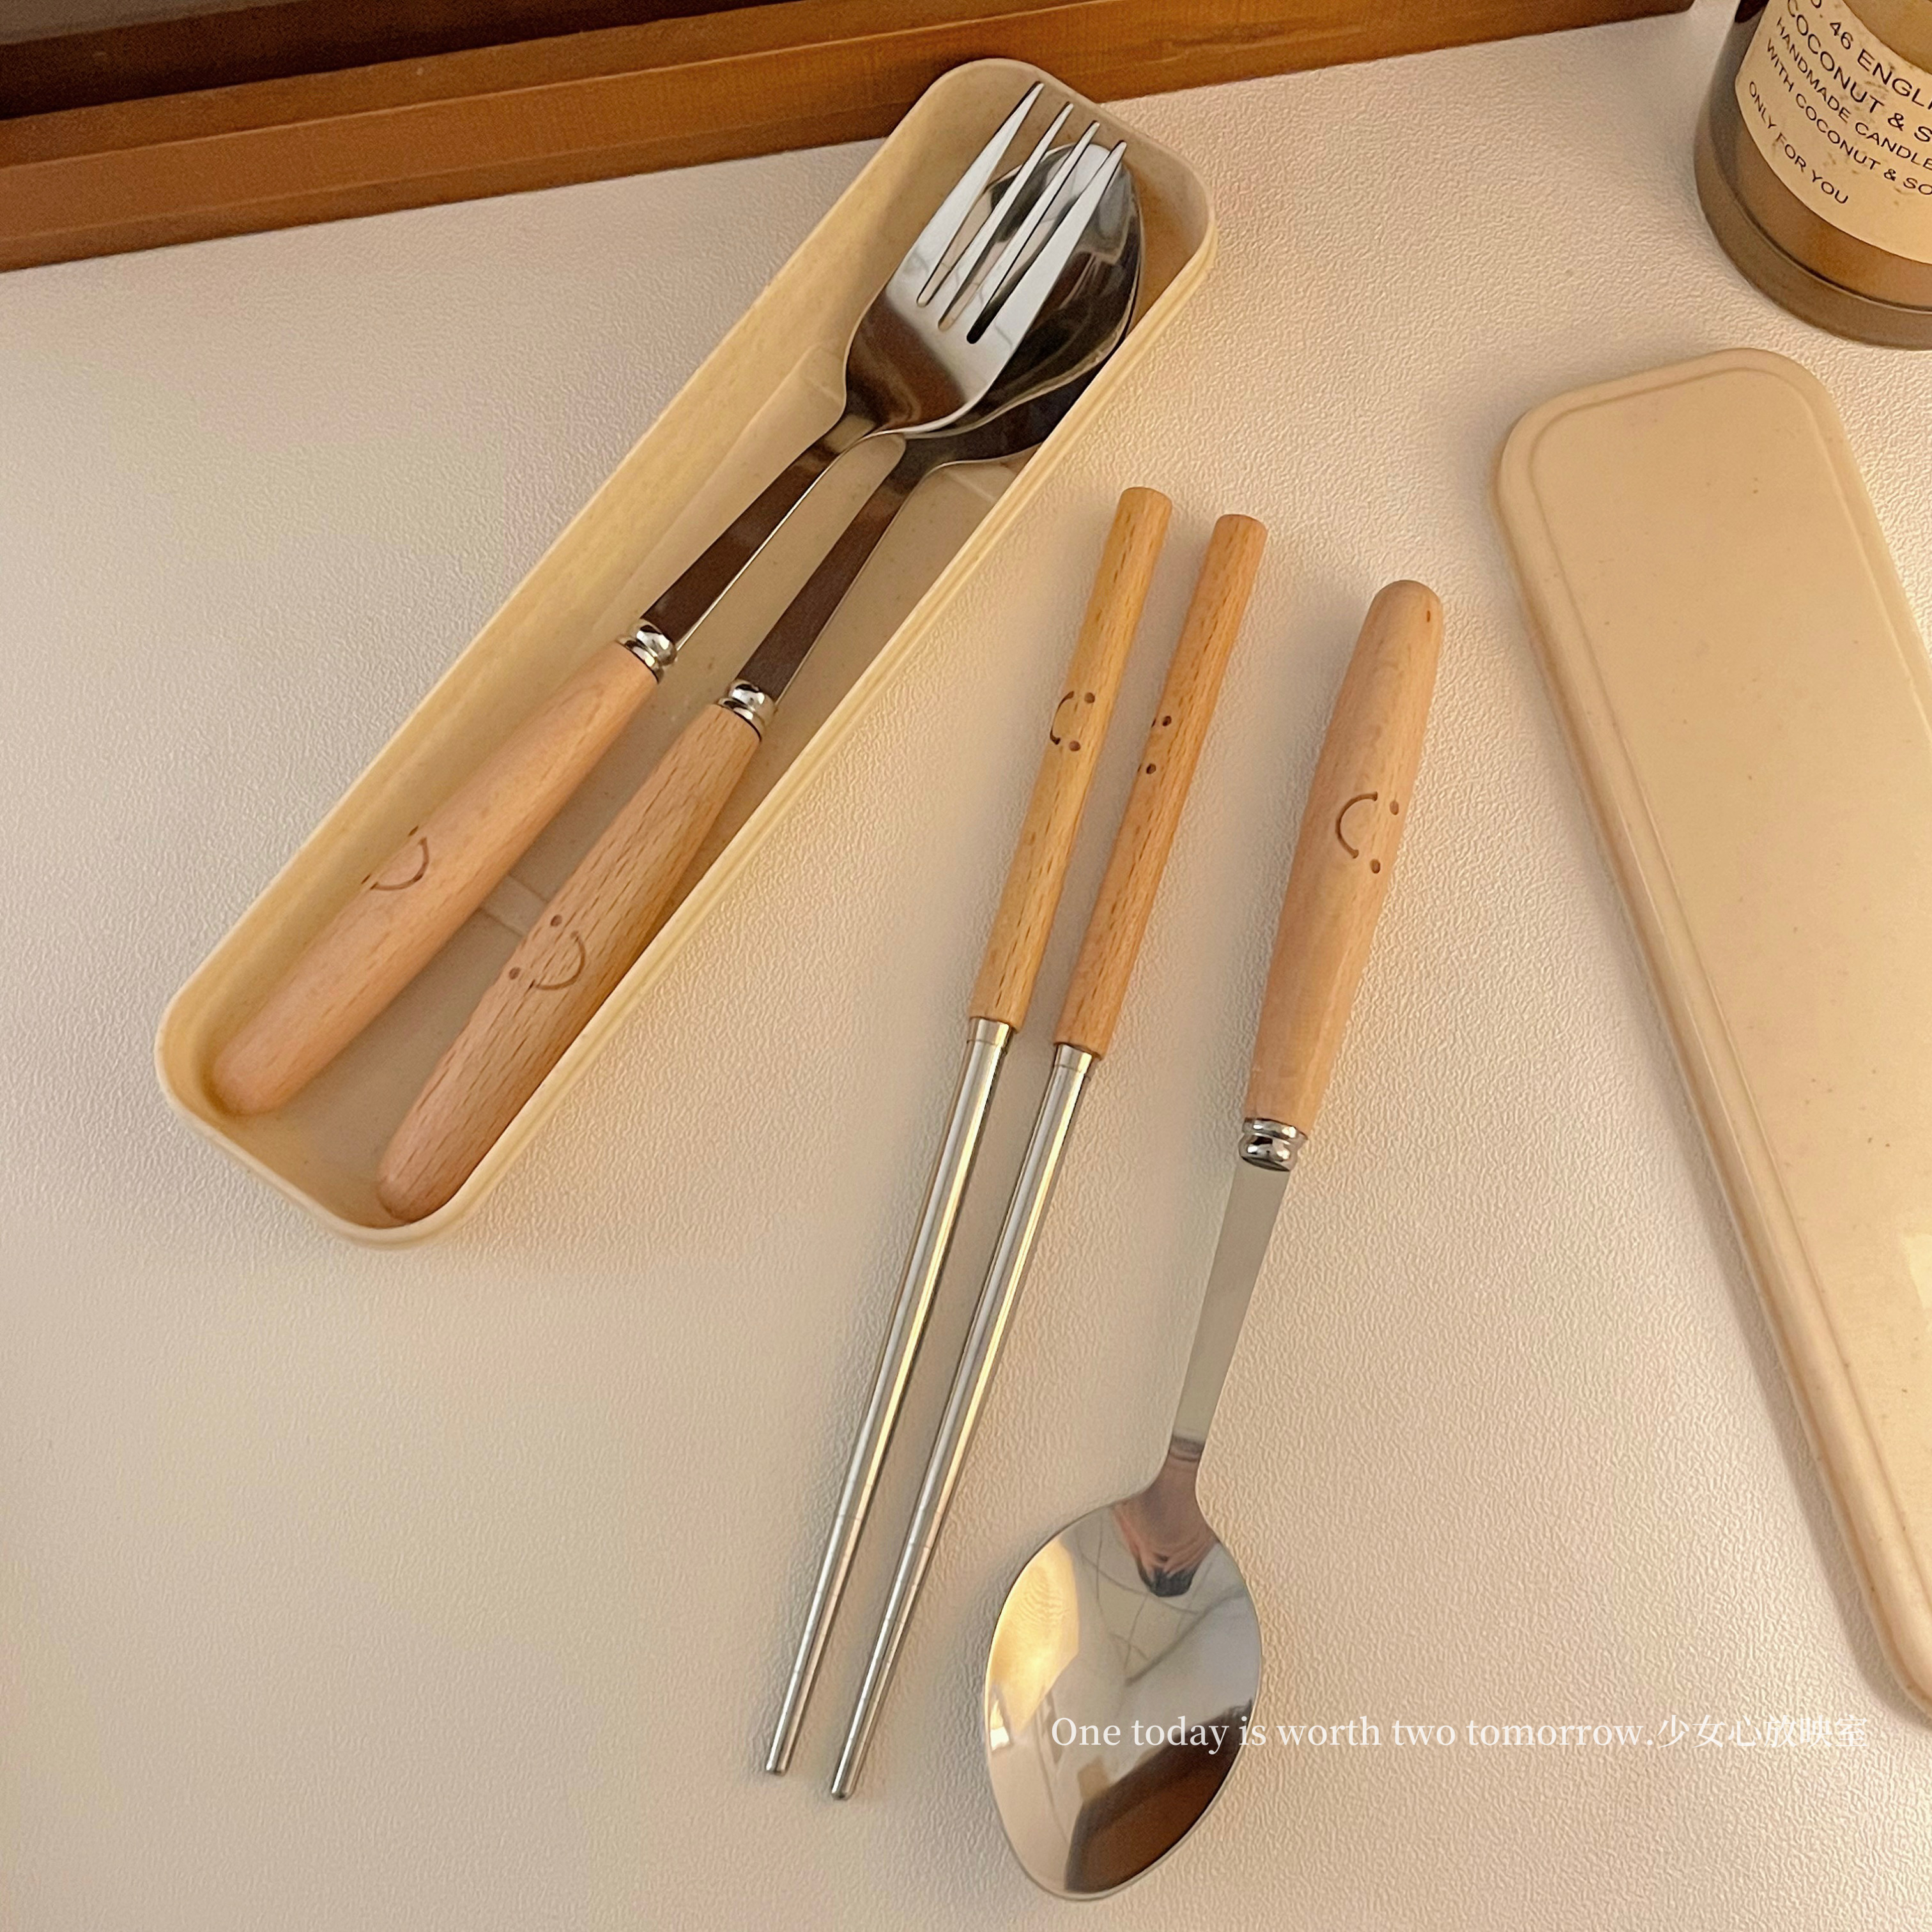 可爱笑脸筷子勺子叉子餐具套装木柄不锈钢三件套学生儿童成人便携